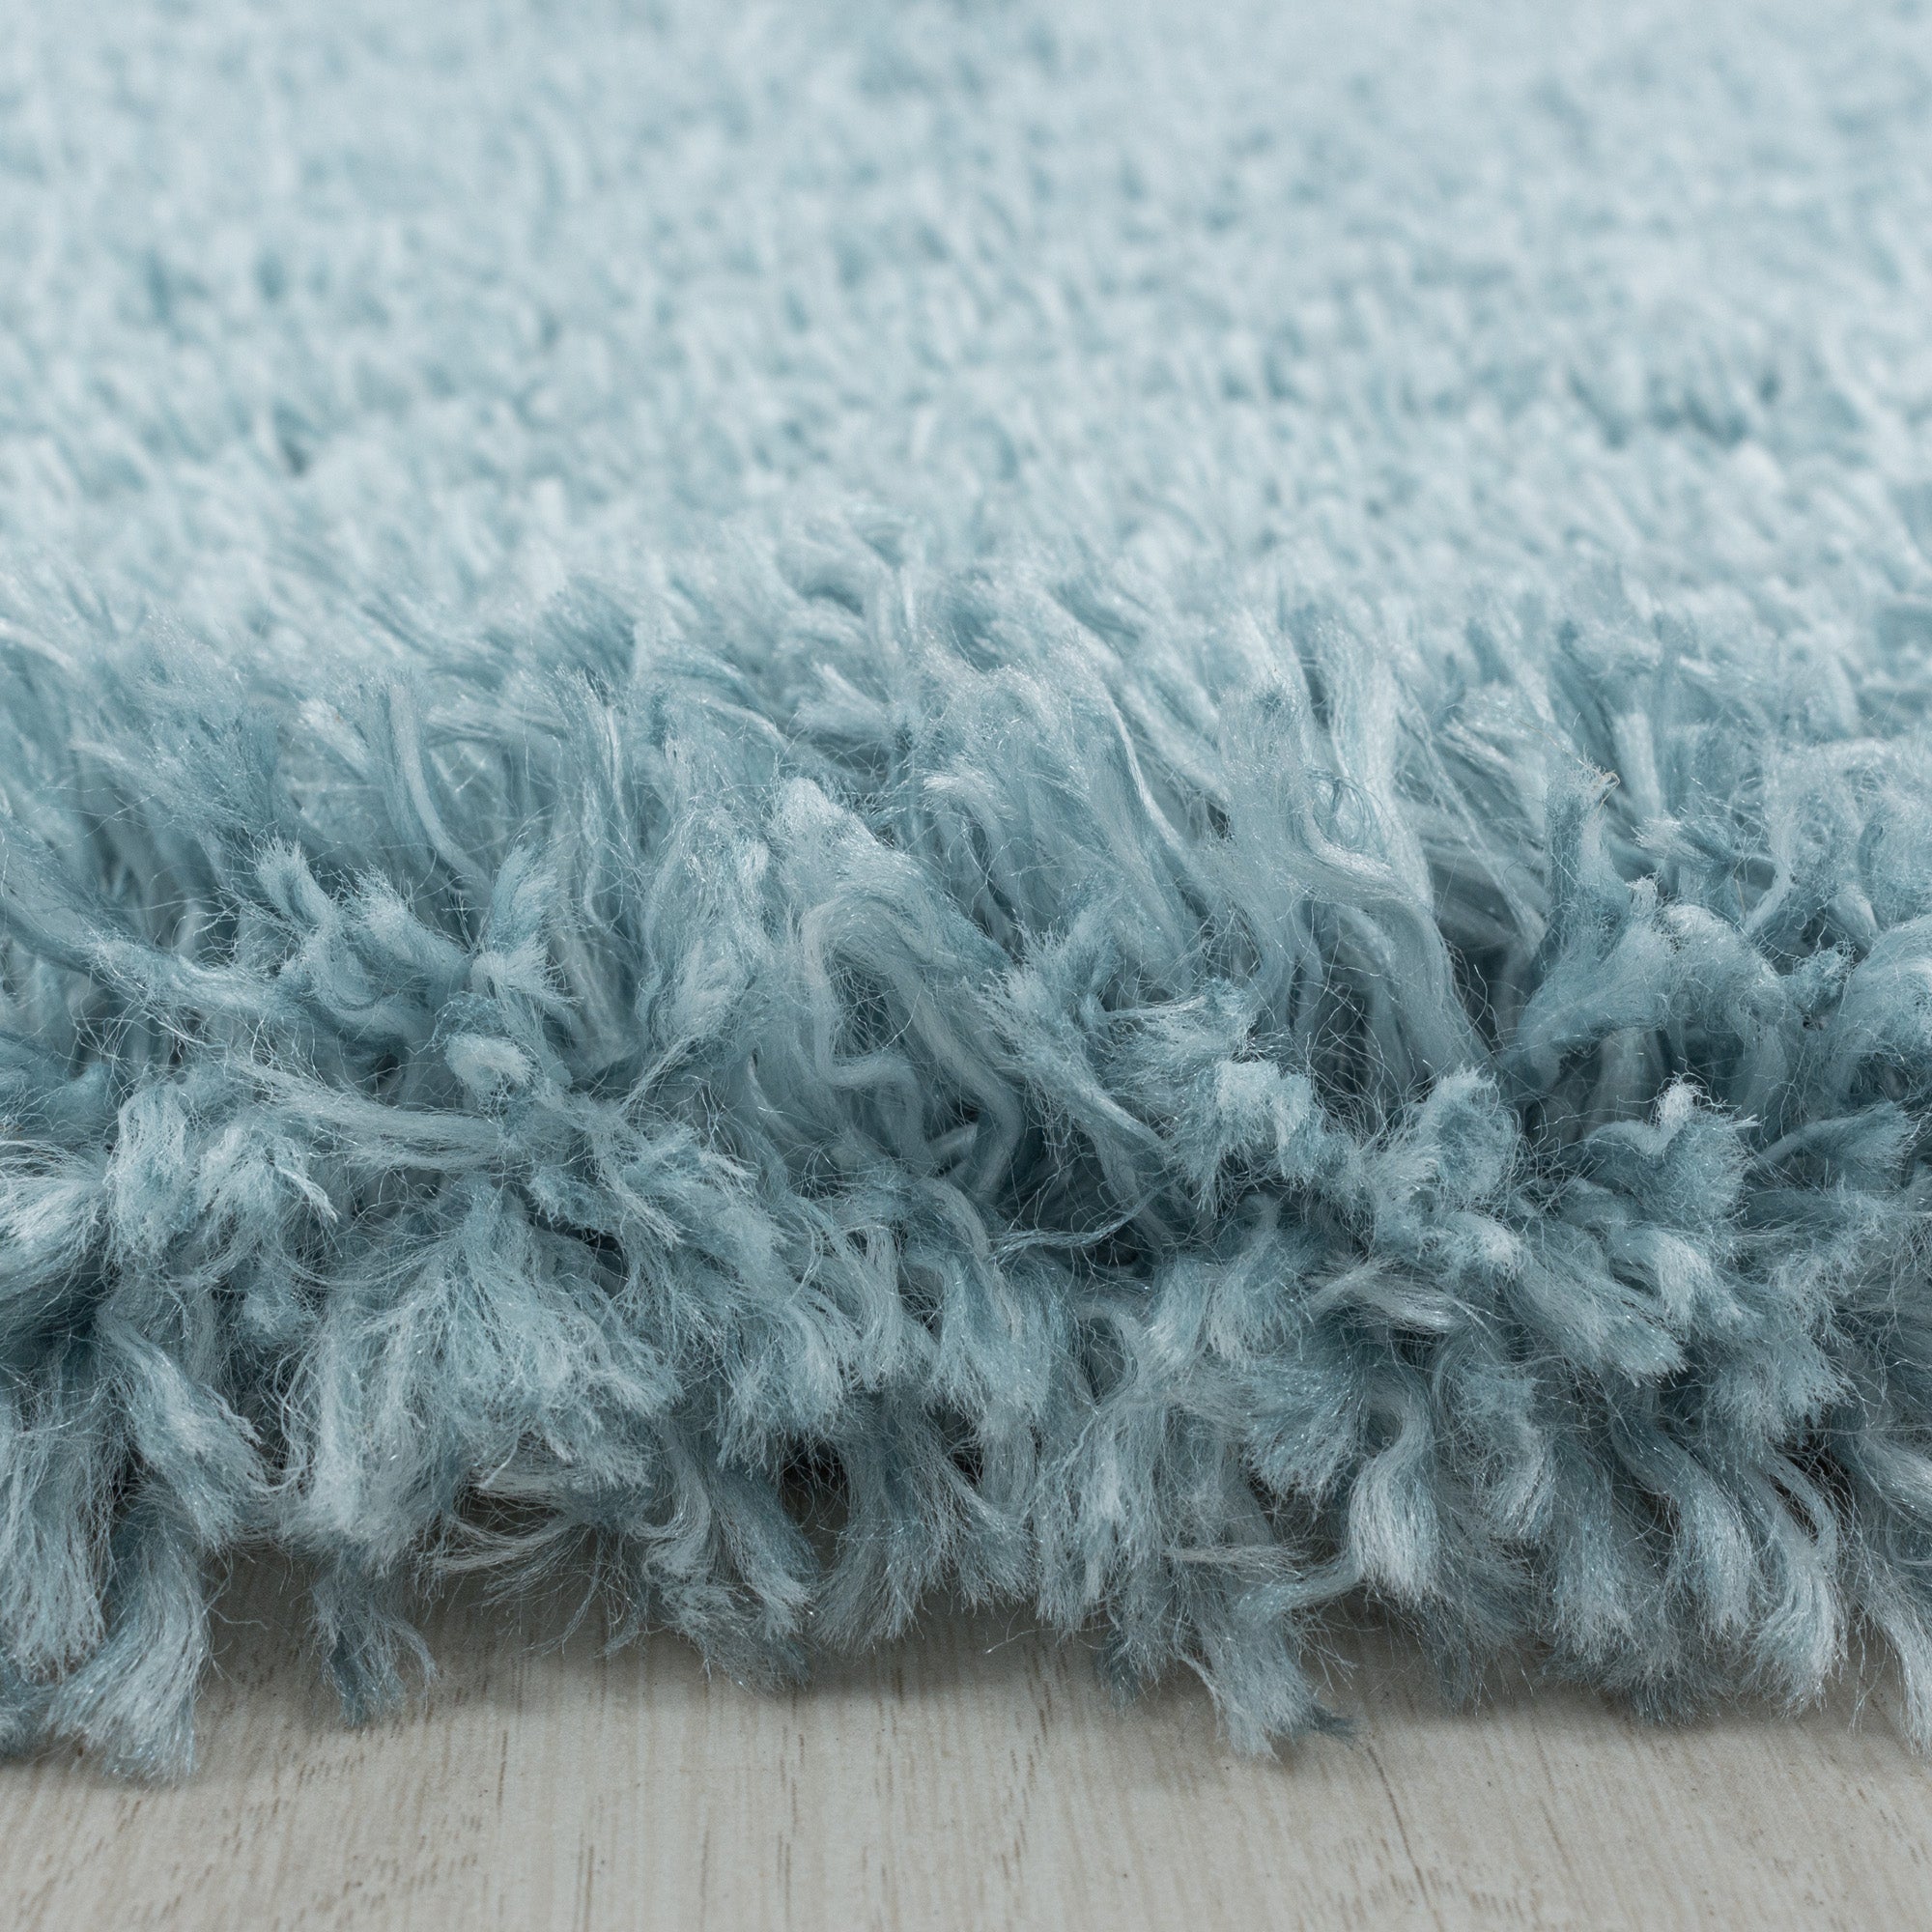 Shaggy Hochflor Teppich Wohnzimmerteppich Flor Super Weich Farbe Blau